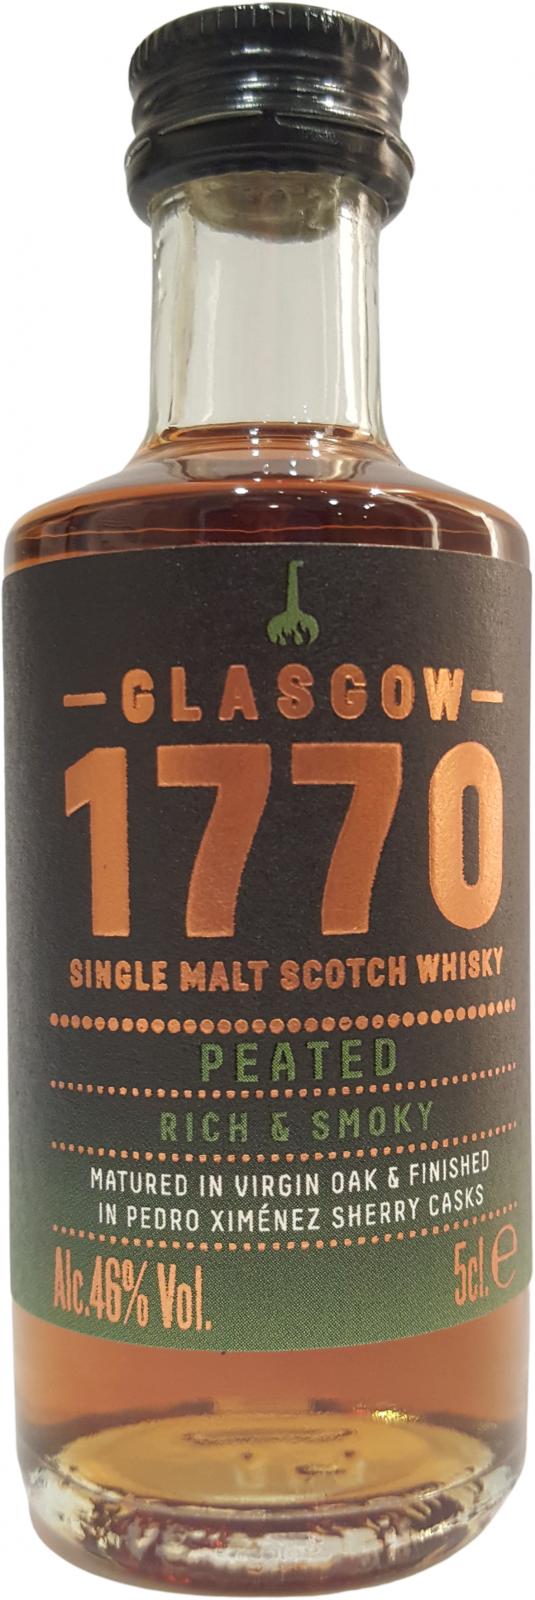 1770 Glasgow Single Malt - Peated